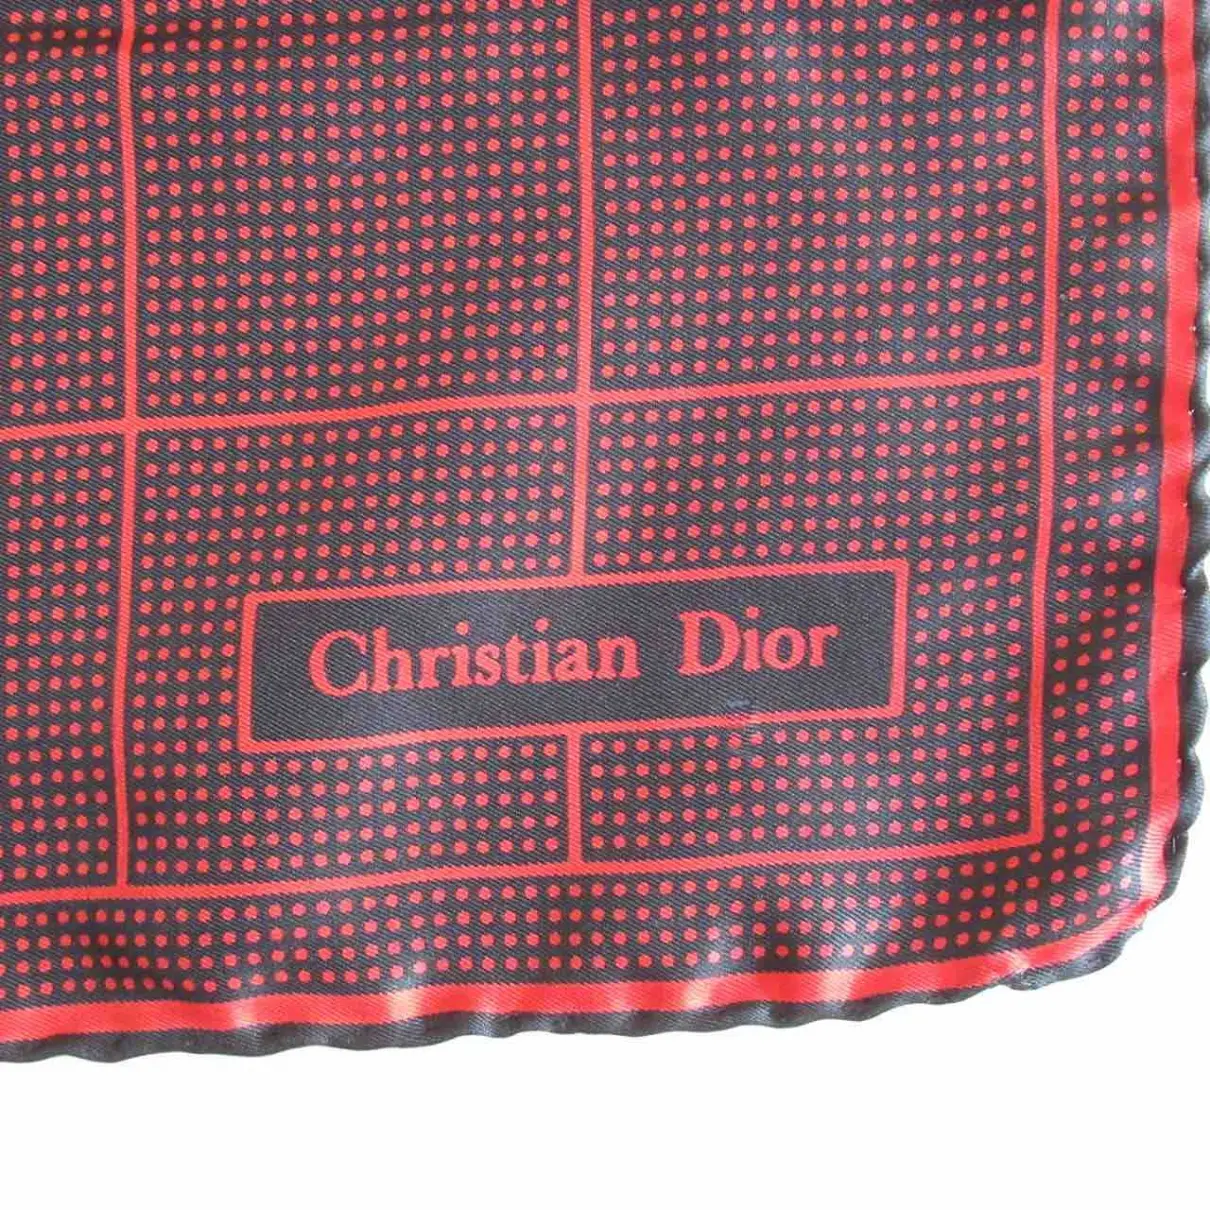 Dior Silk handkerchief for sale - Vintage